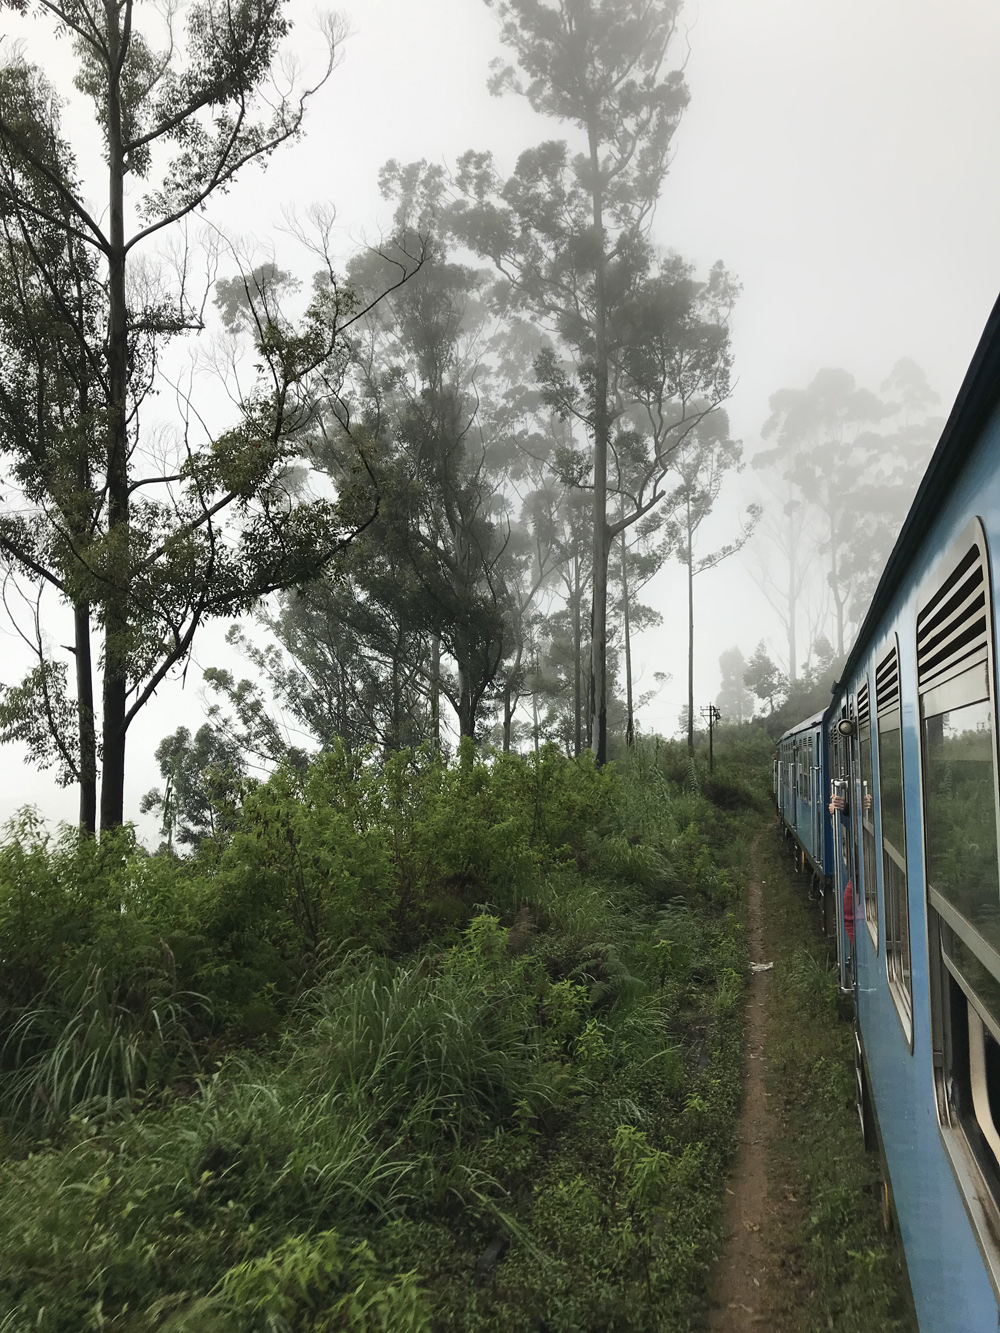 Sri Lanka Haputale Train Rail